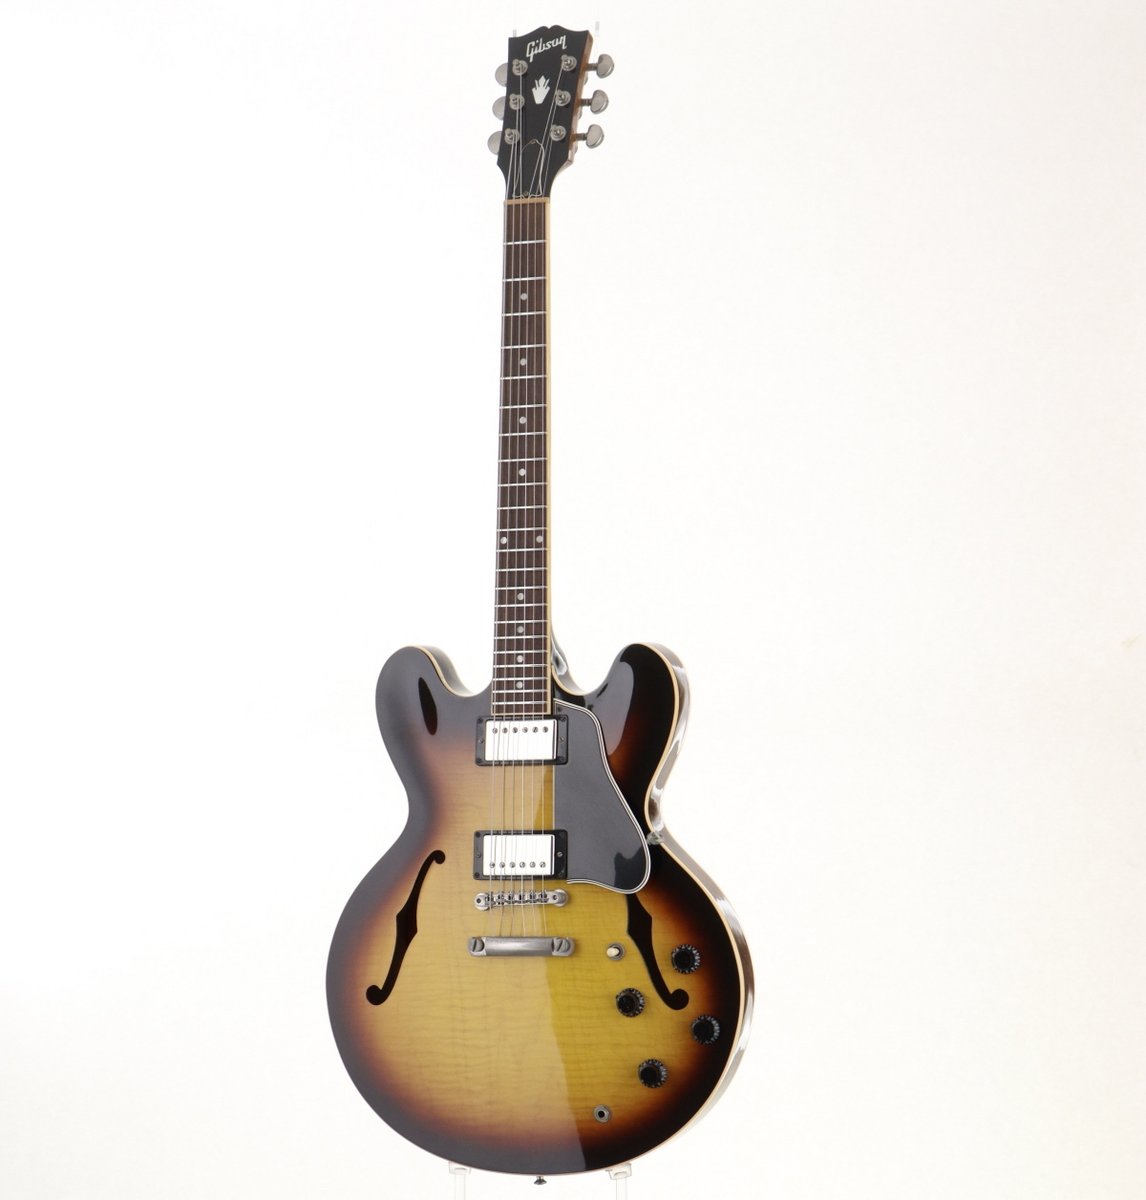 中古品『＃Gibson Memphis / ES-335 Dot Figured Vintage Sunburst』
綺麗に浮き出たフィギュアドメイプルトップが印象的なES335の中古品が入荷しました！
ishibashi.co.jp/ec/product/280…
＃ギブソン